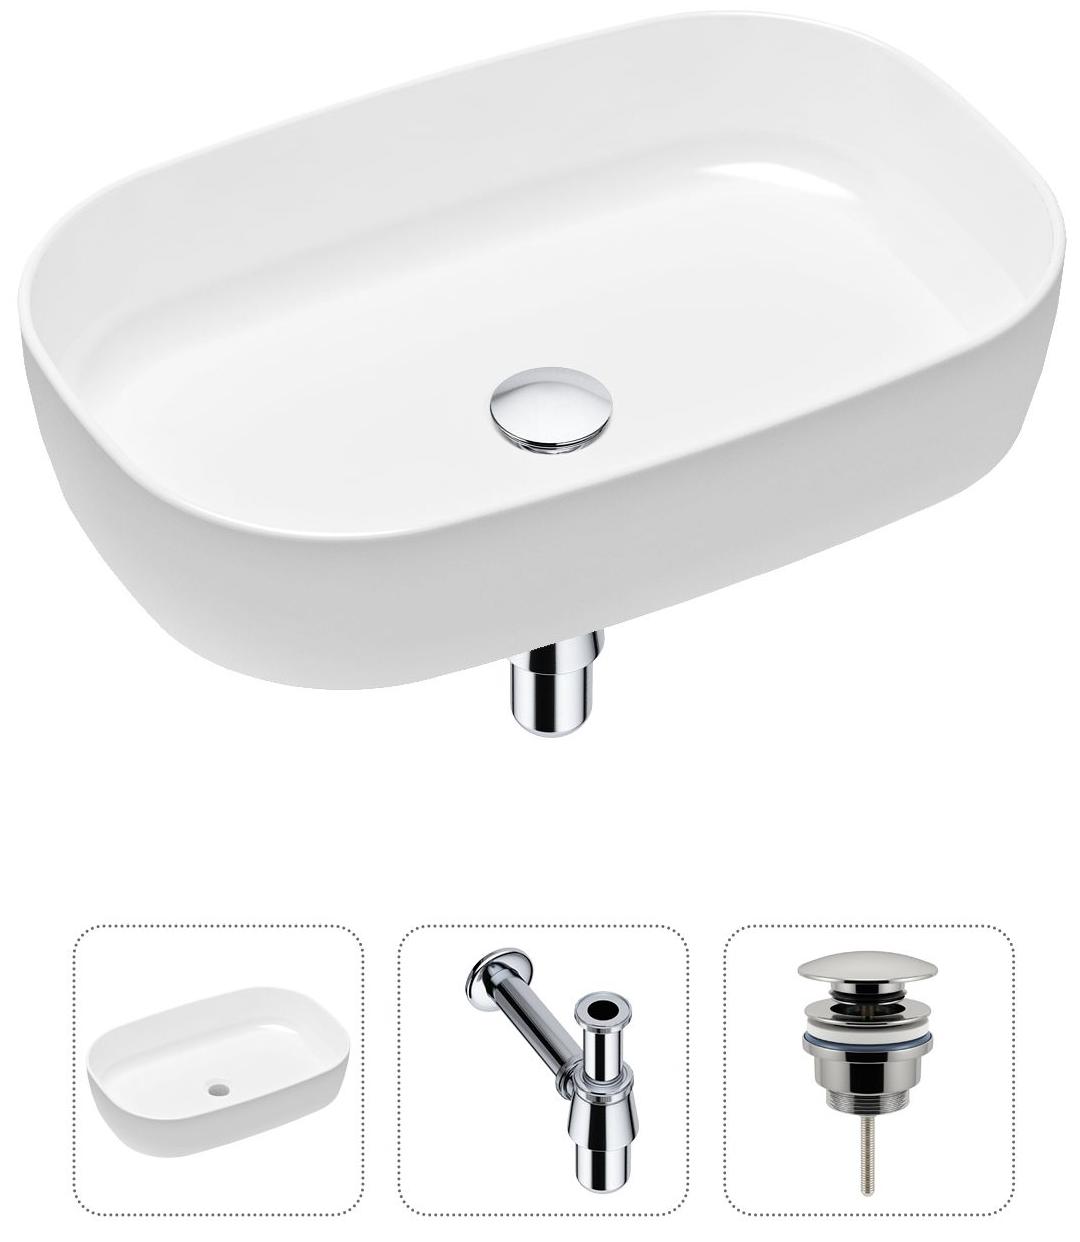 Комплект 3 в 1 Lavinia Boho Bathroom Sink 21520058: накладная фарфоровая раковина 54 см, металлический сифон, донный клапан